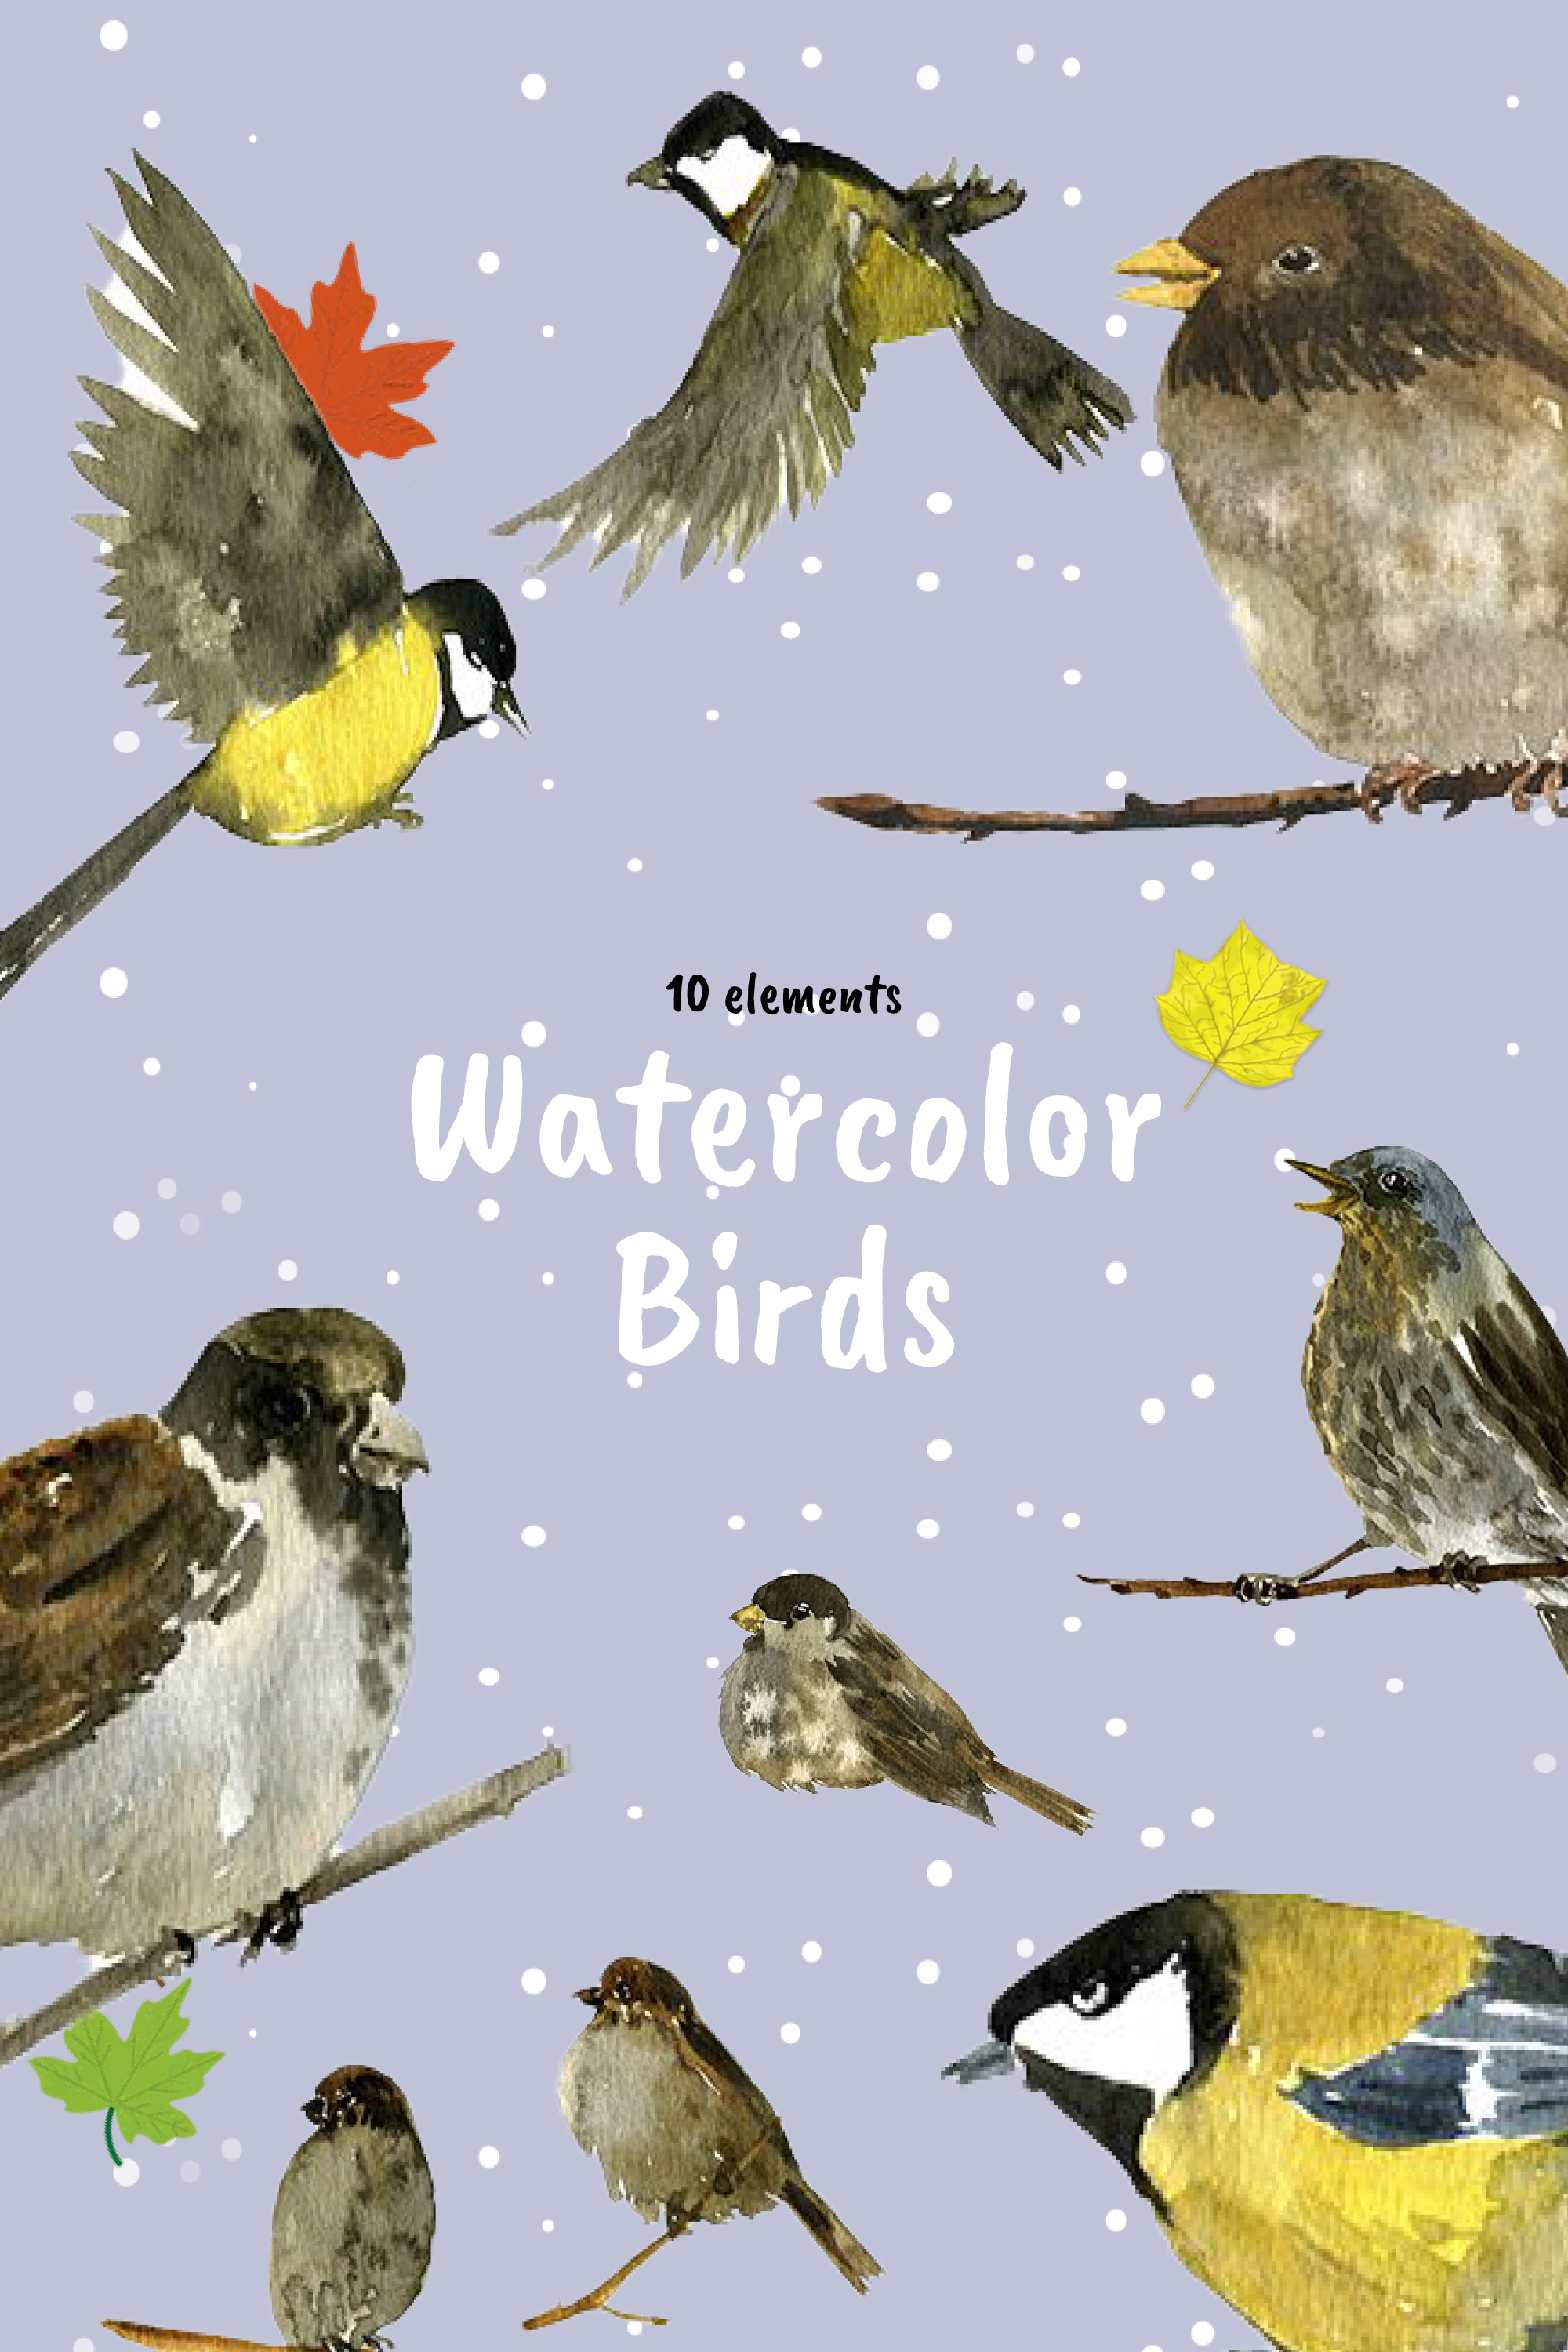 Watercolor birds of pinterest